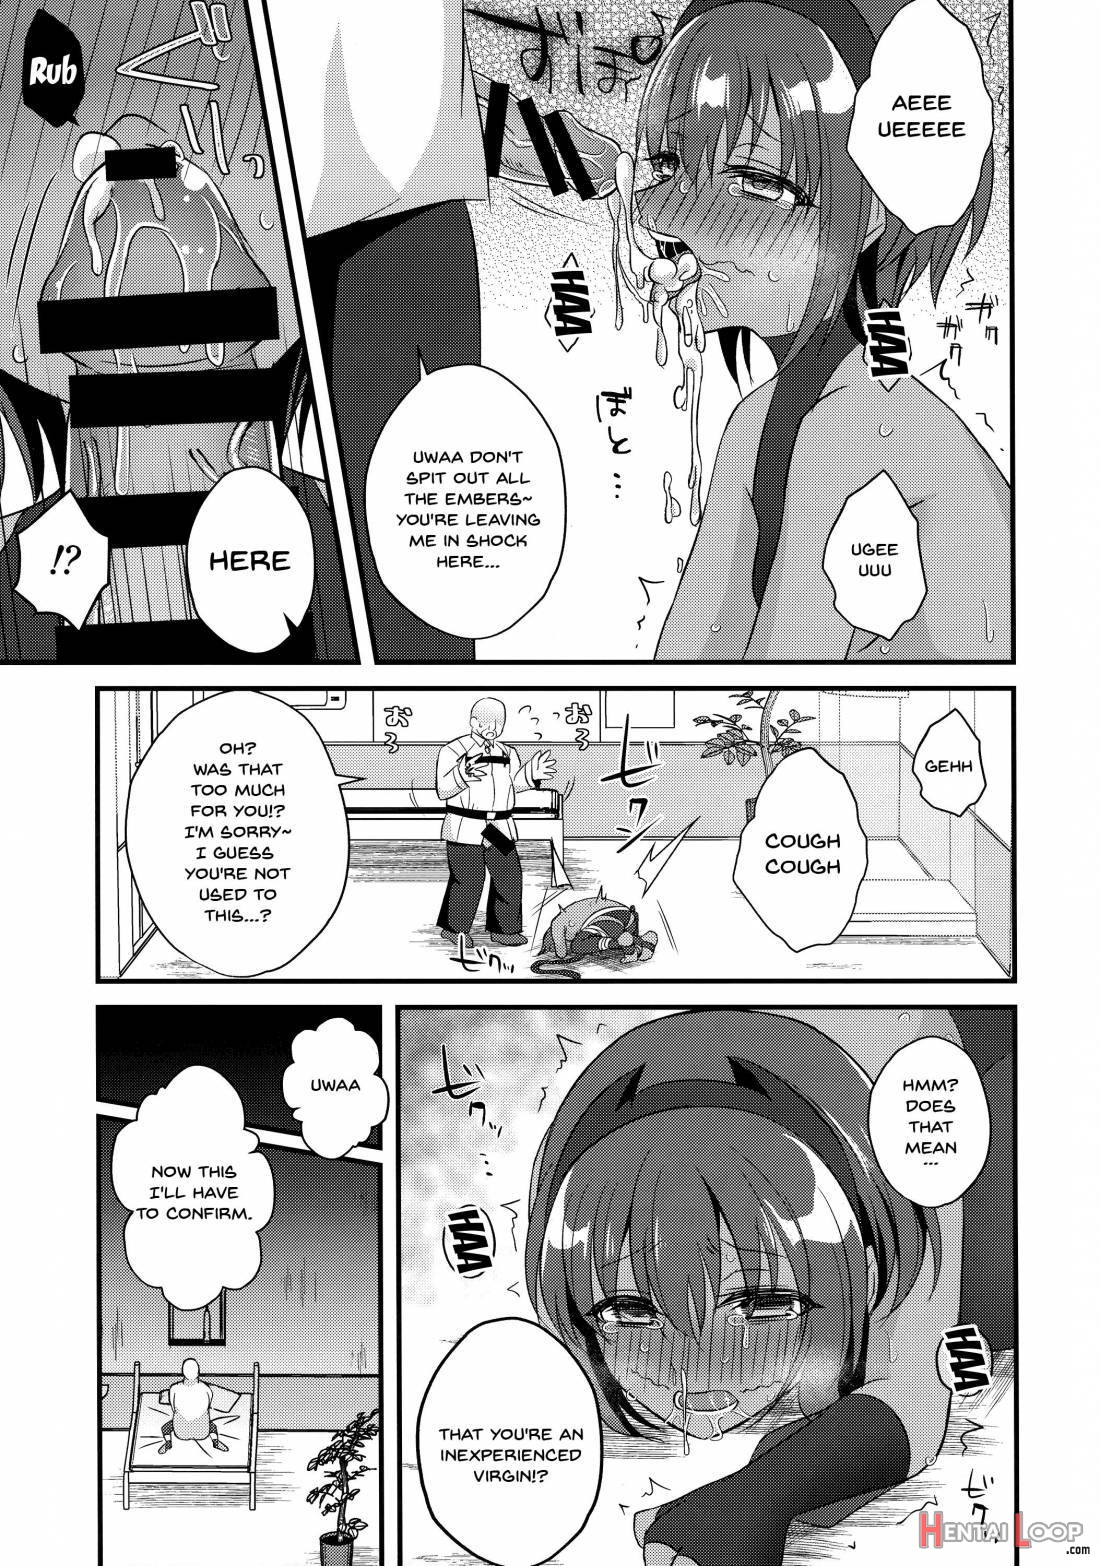 NTR ni Saku Kusuri no Hana page 8